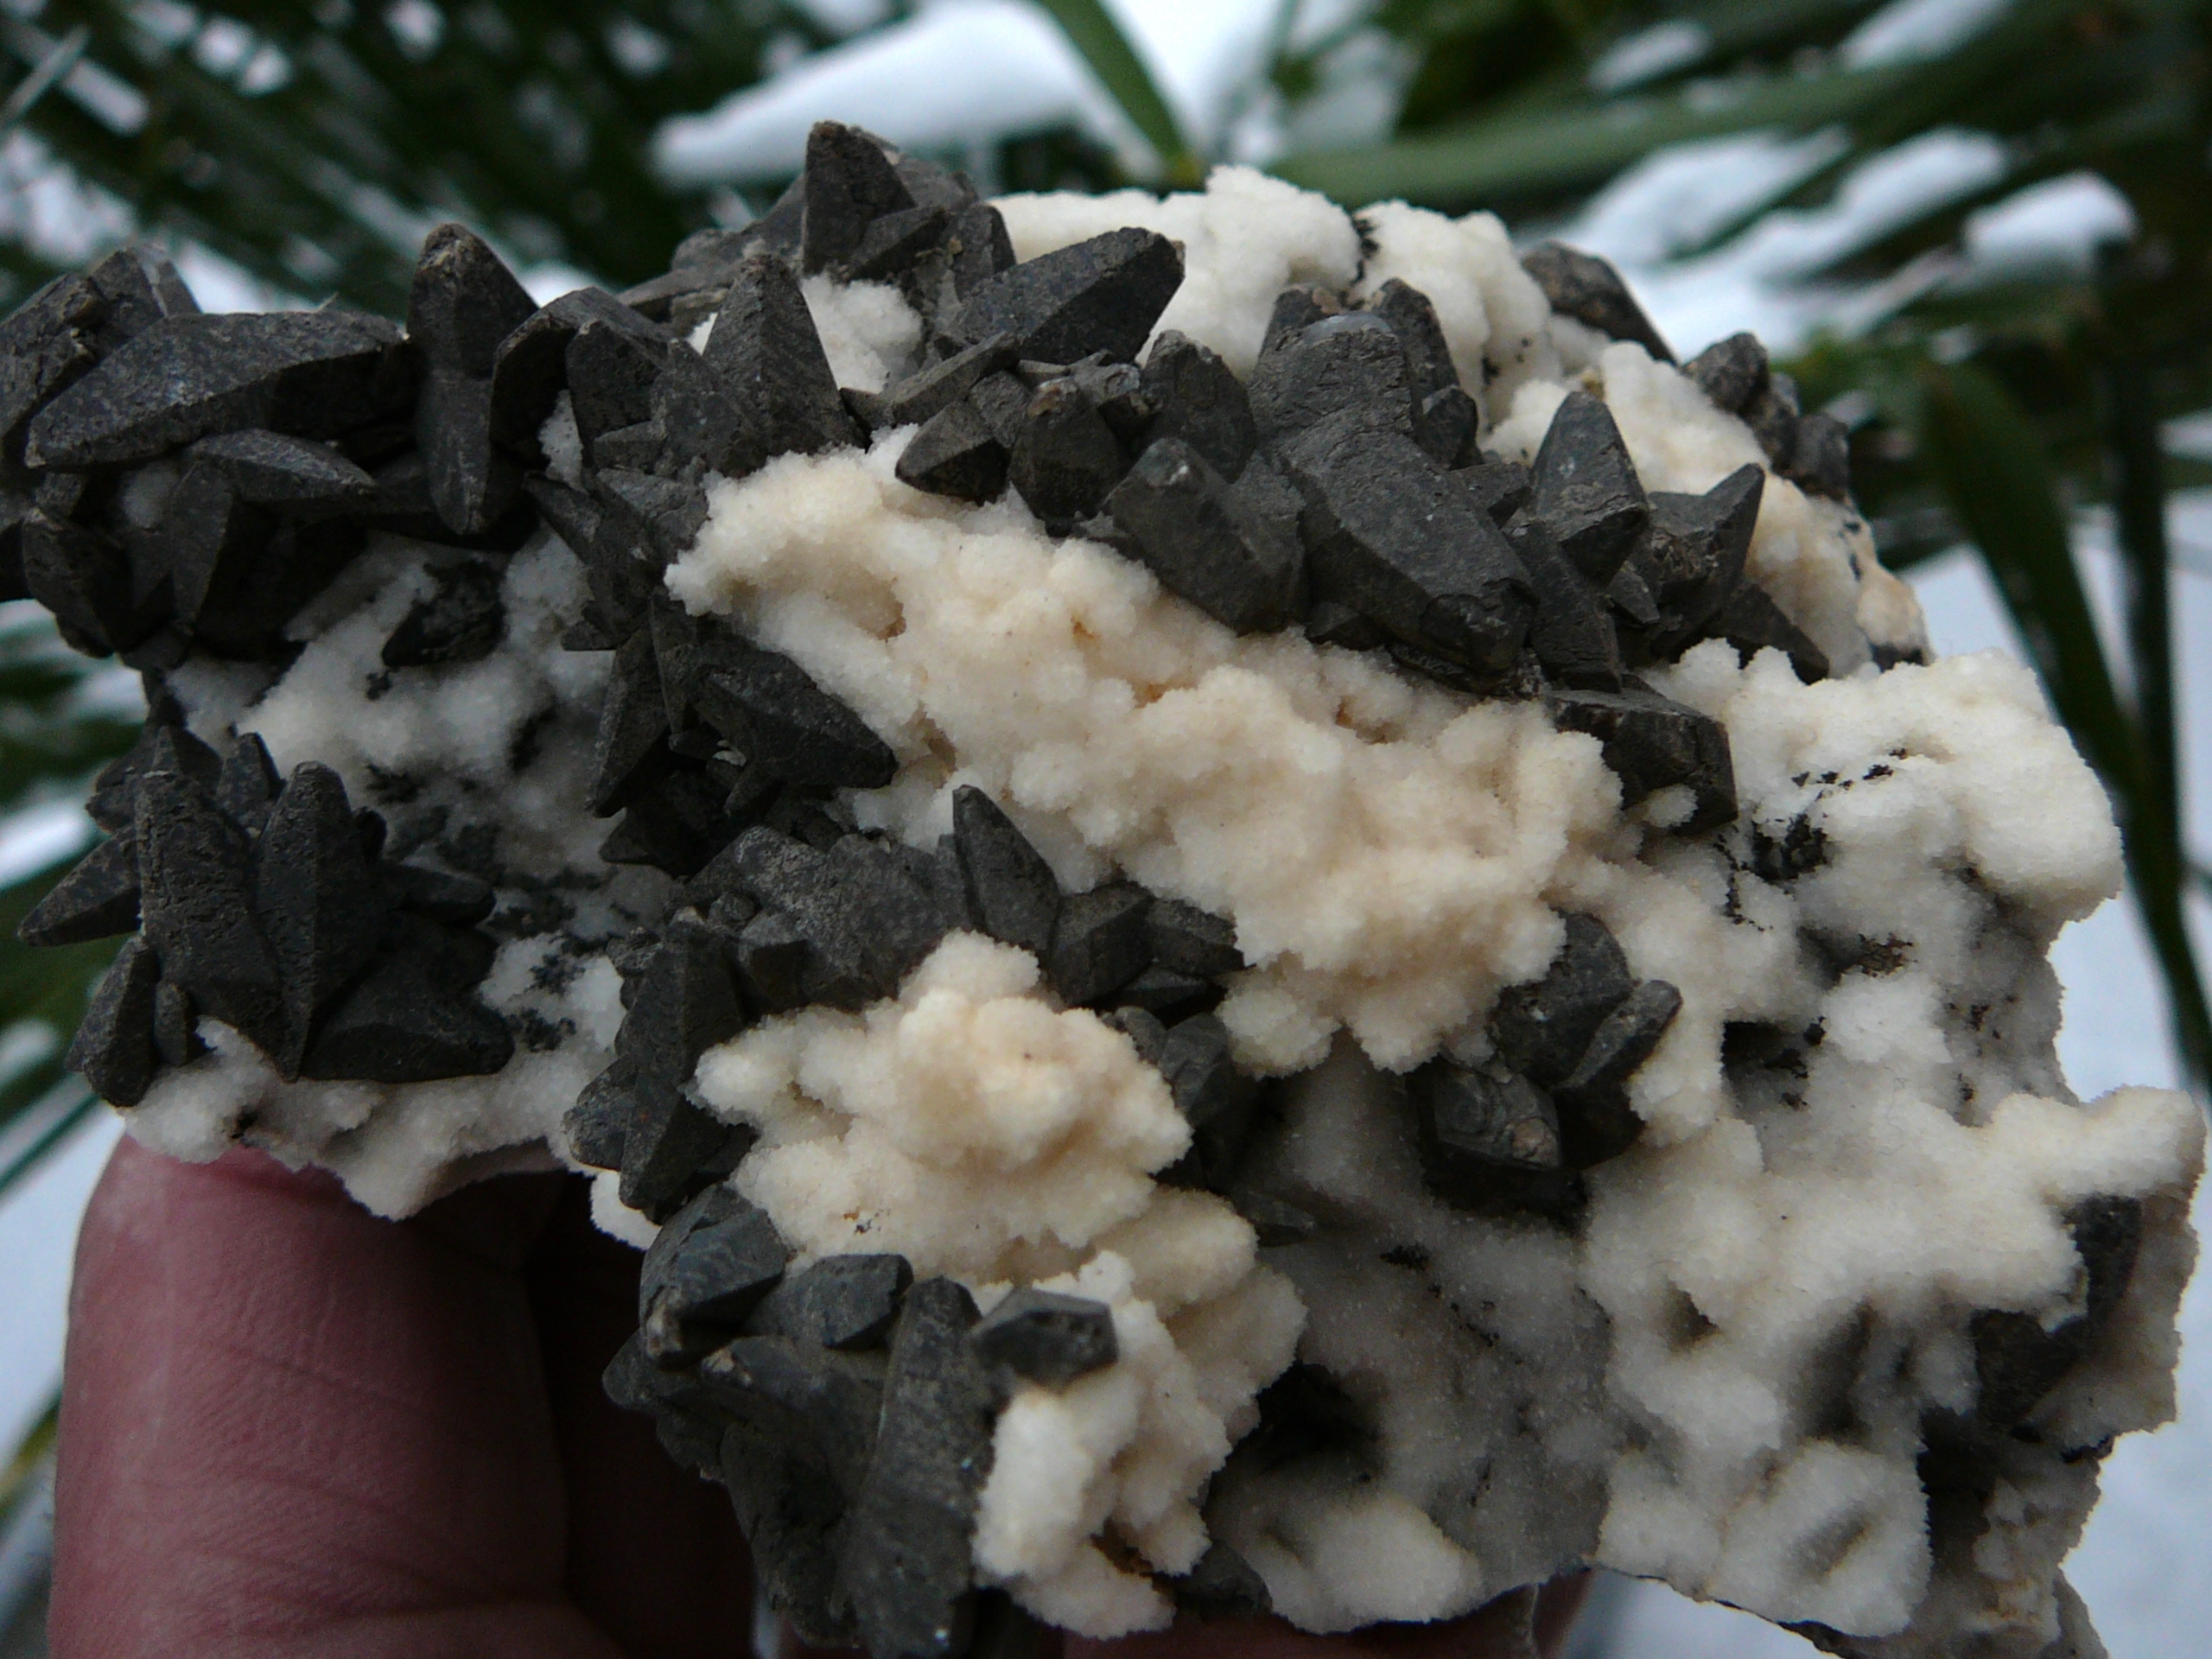 Almost black calcite